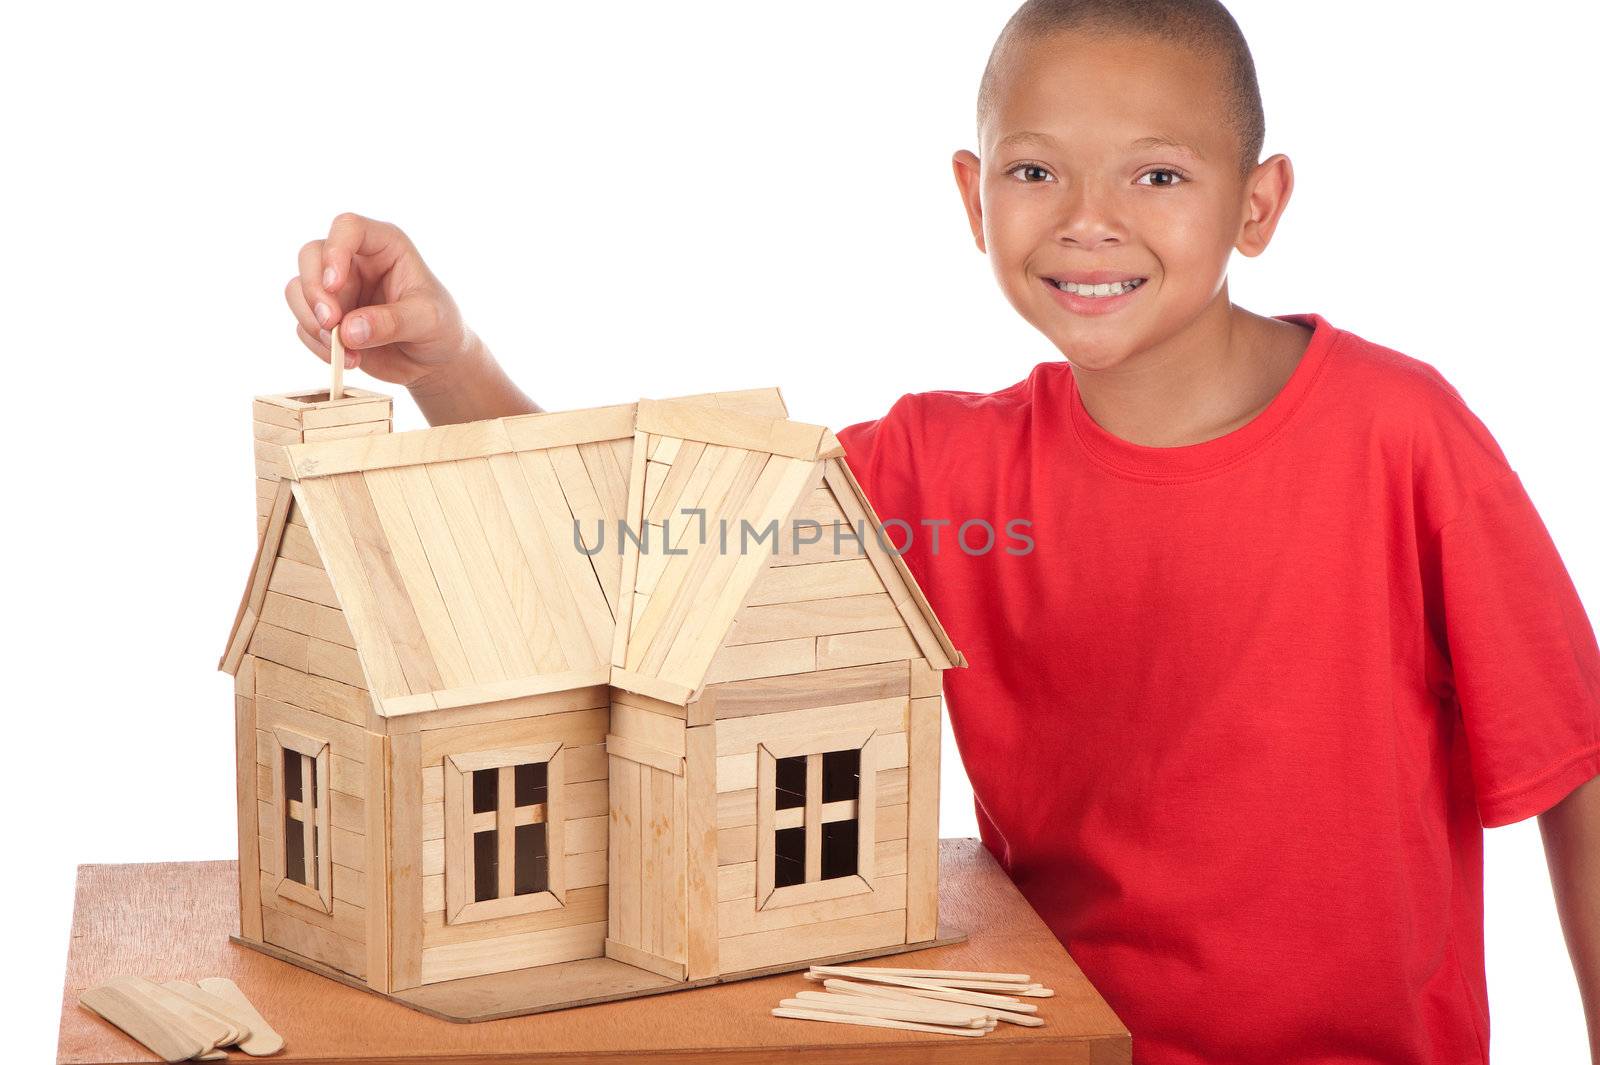 Boy builds popsicle house by Zafi123